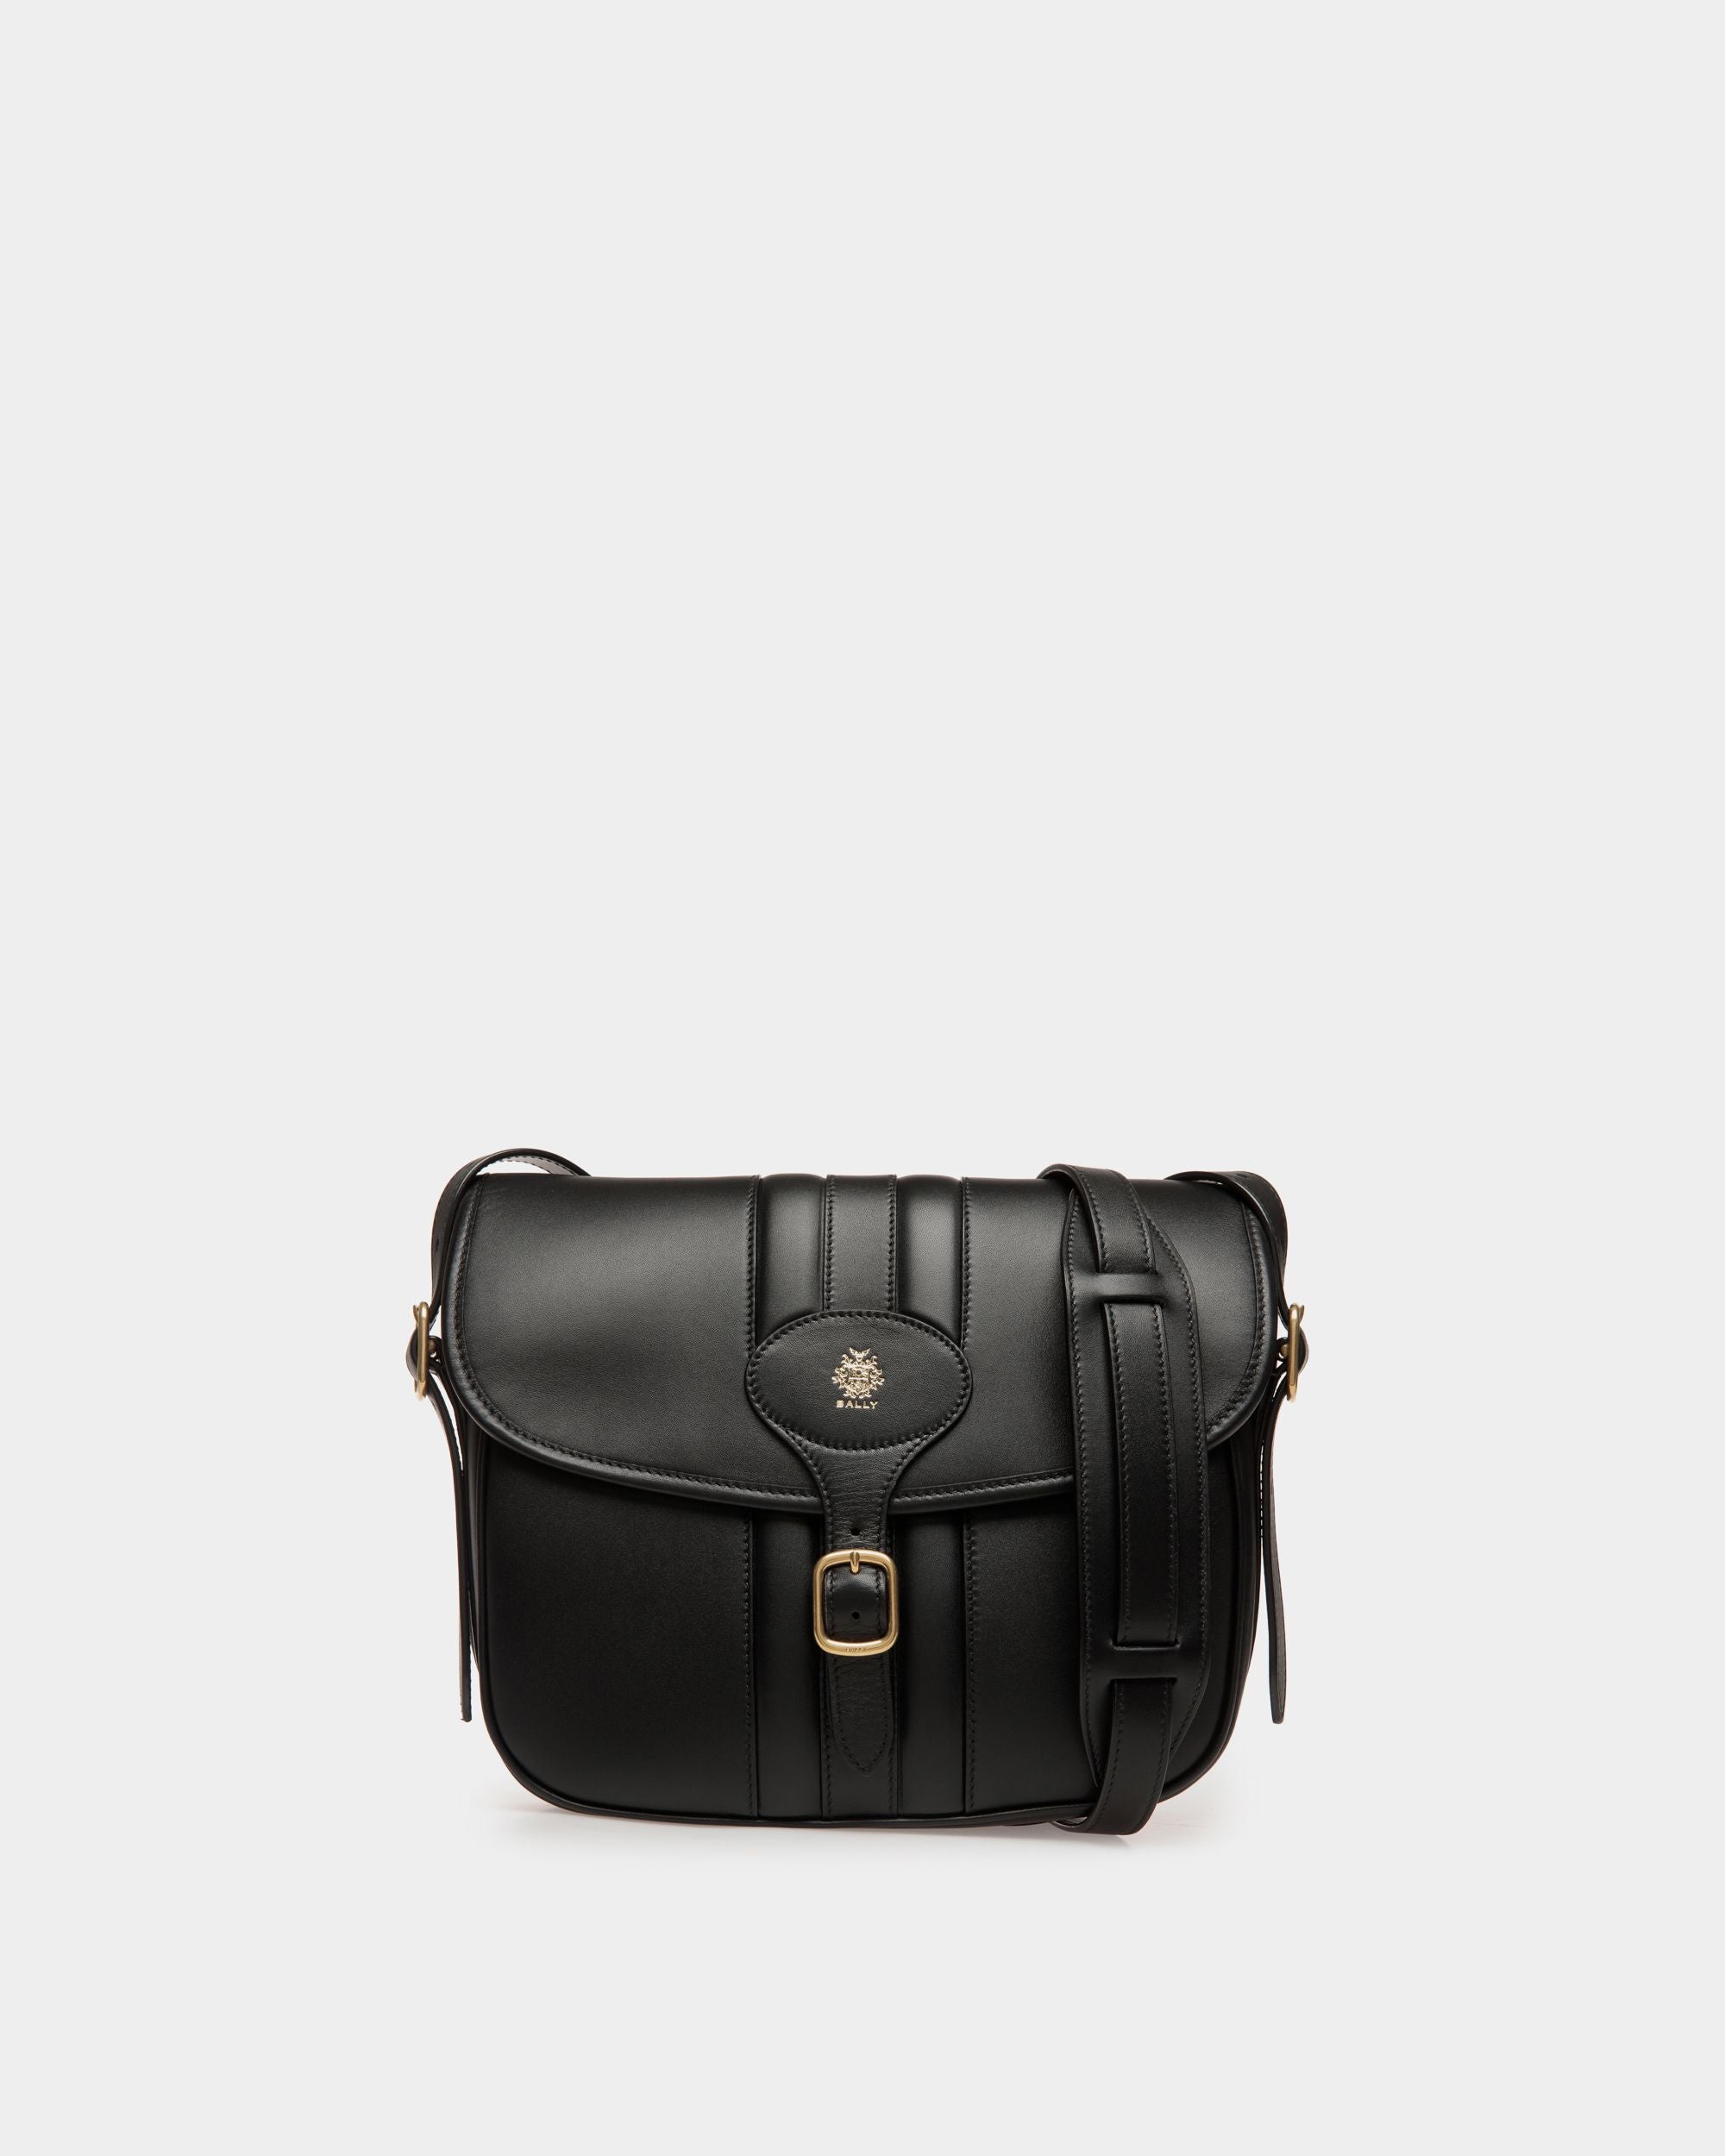 Men's Beckett Crossbody Bag in Black Leather | Bally | Still Life Front